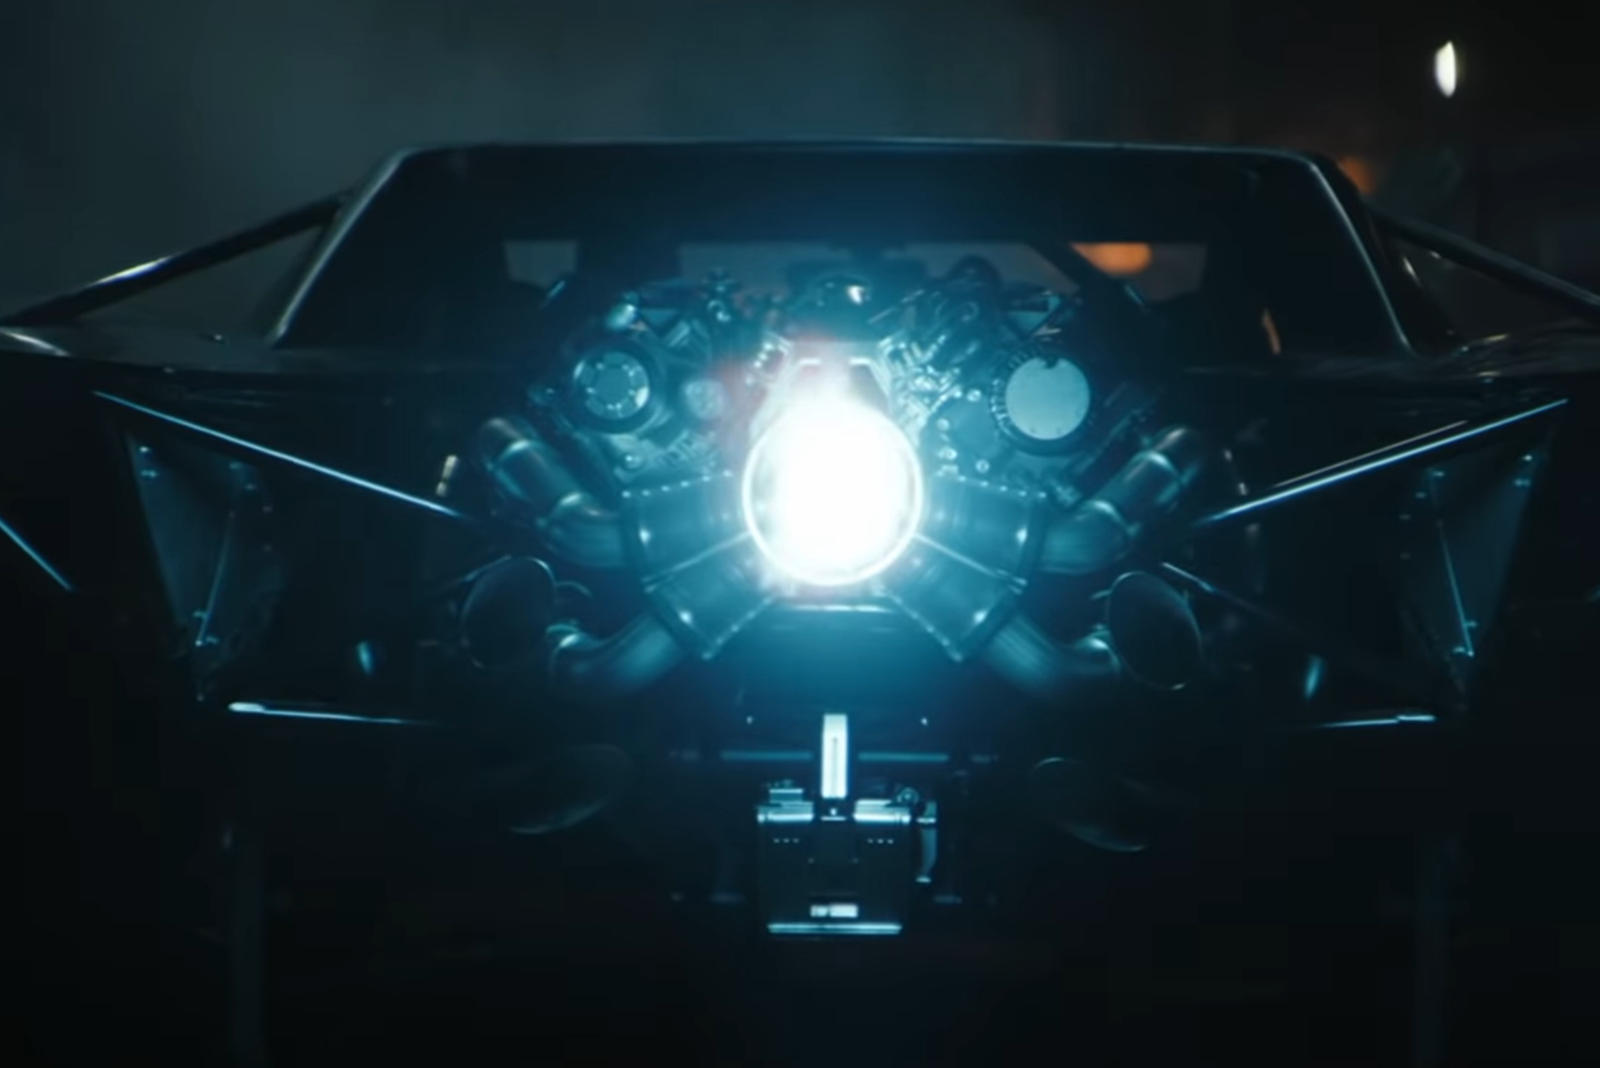 سيارة باتموبيل الجديدة تظهر في إعلان فيلم باتمان القادم 21